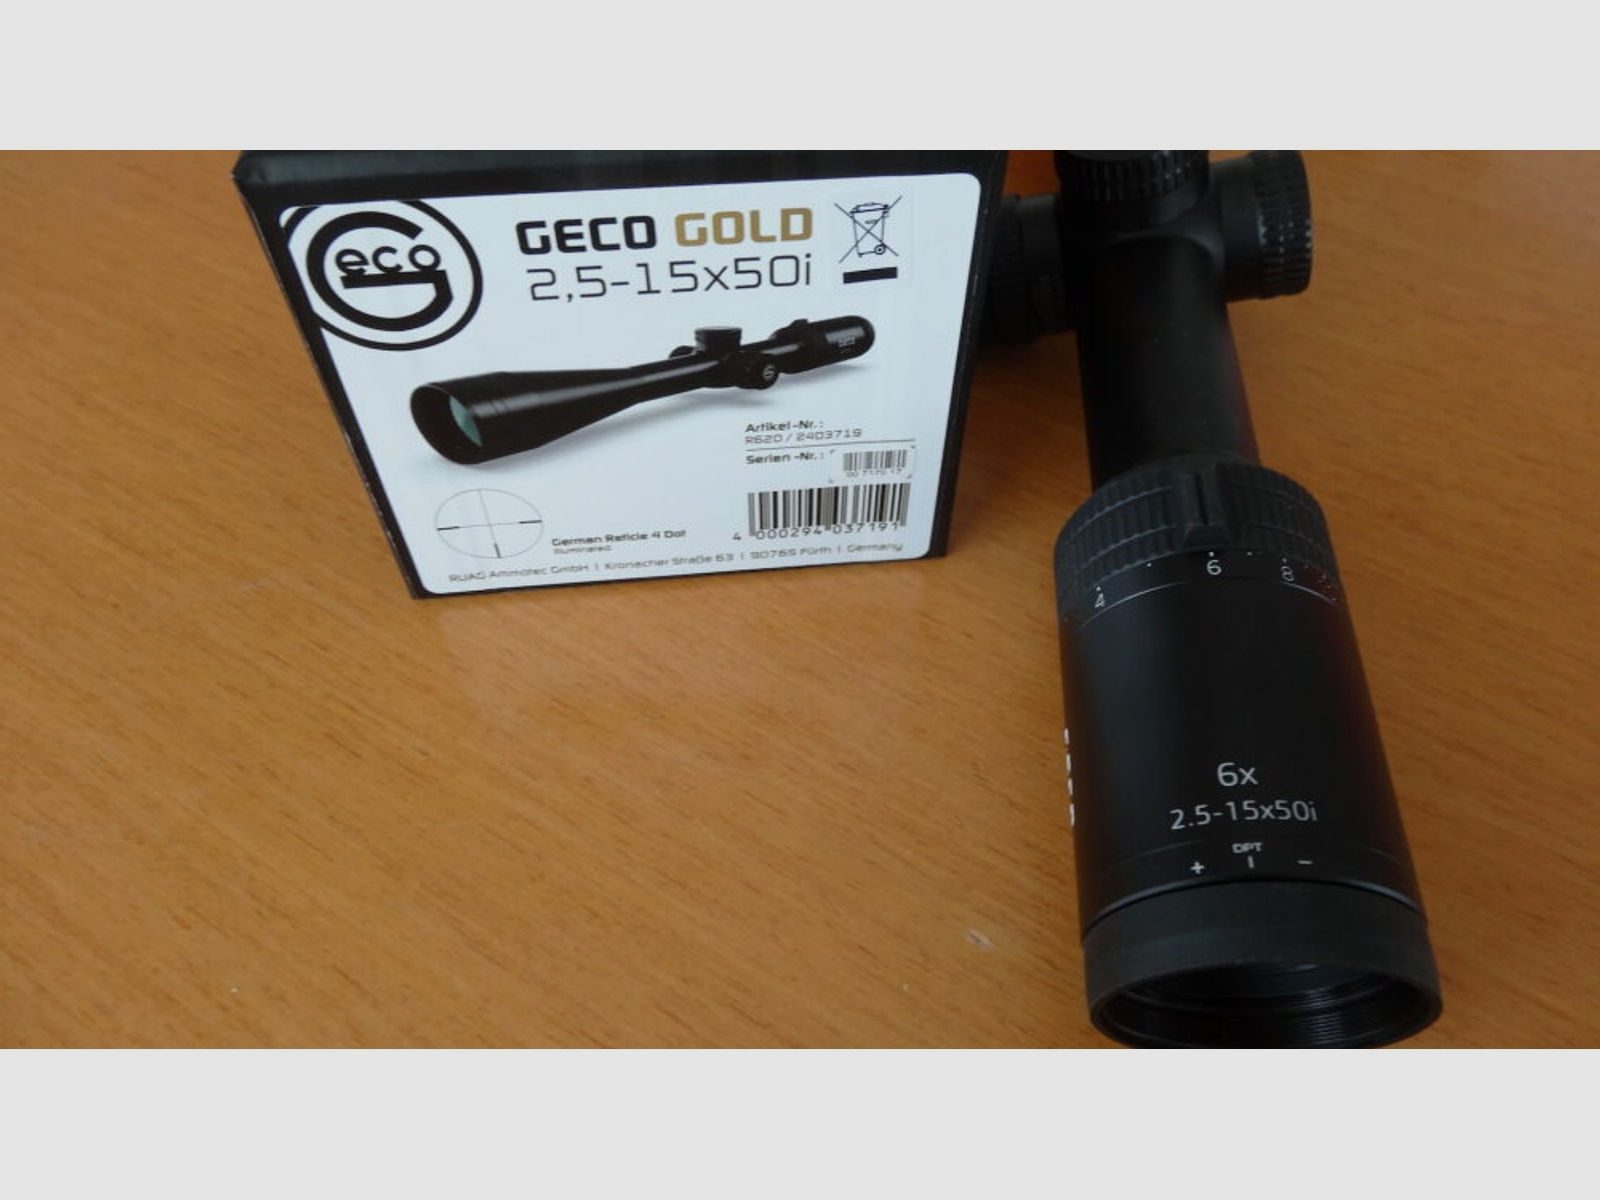 GECO	 Geco Zielfernrohr Gold 2,5-15x50i, Abs. 4 beleuchtet